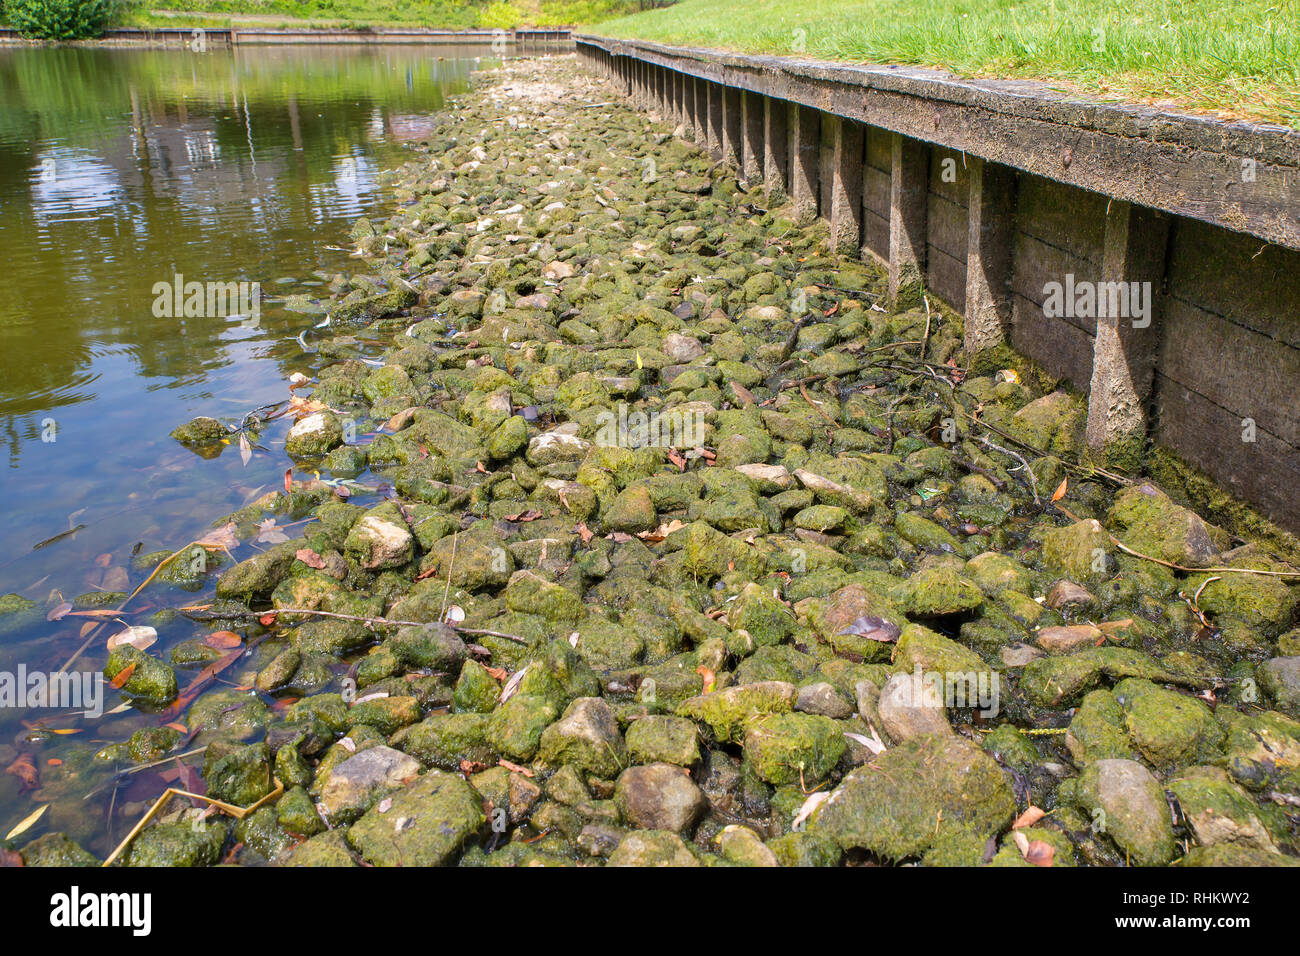 Urbano stagno olandese con un basso livello di acqua in estate secca Foto Stock